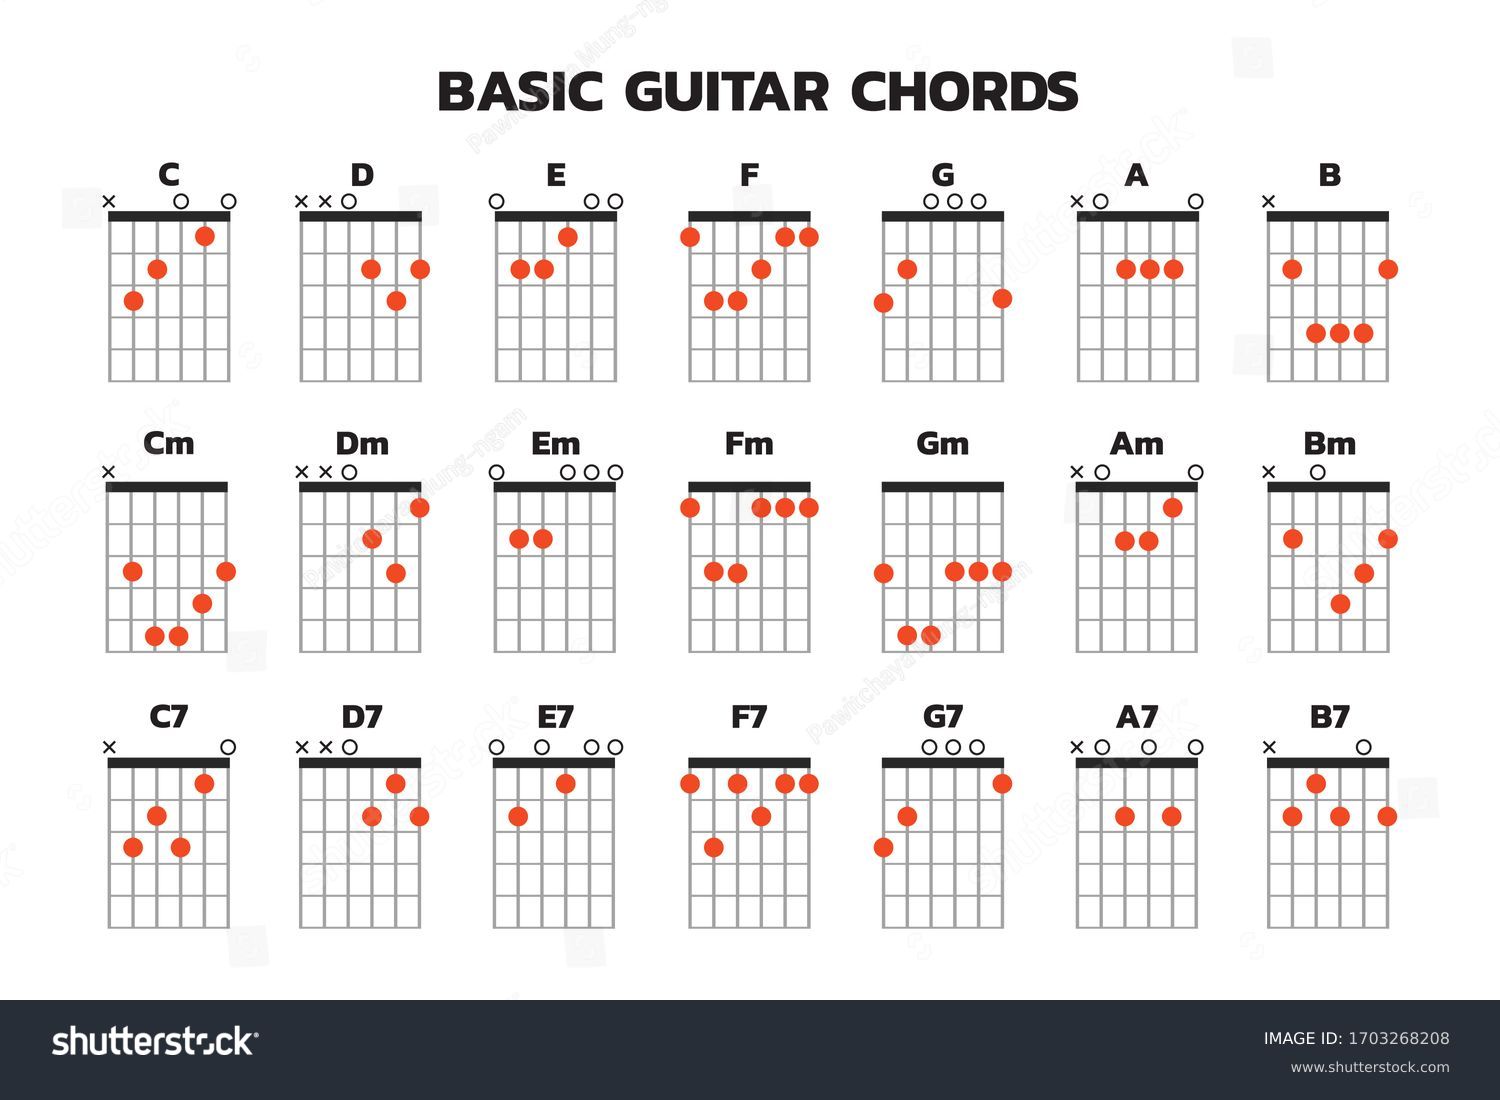 Культурный кот аккорды. Таблица аккордов для гитары. Таблица аккордов для гитары 6 струн для начинающих. Таблица гитарных аккордов полная. Аккорды на гитаре 6 струн.